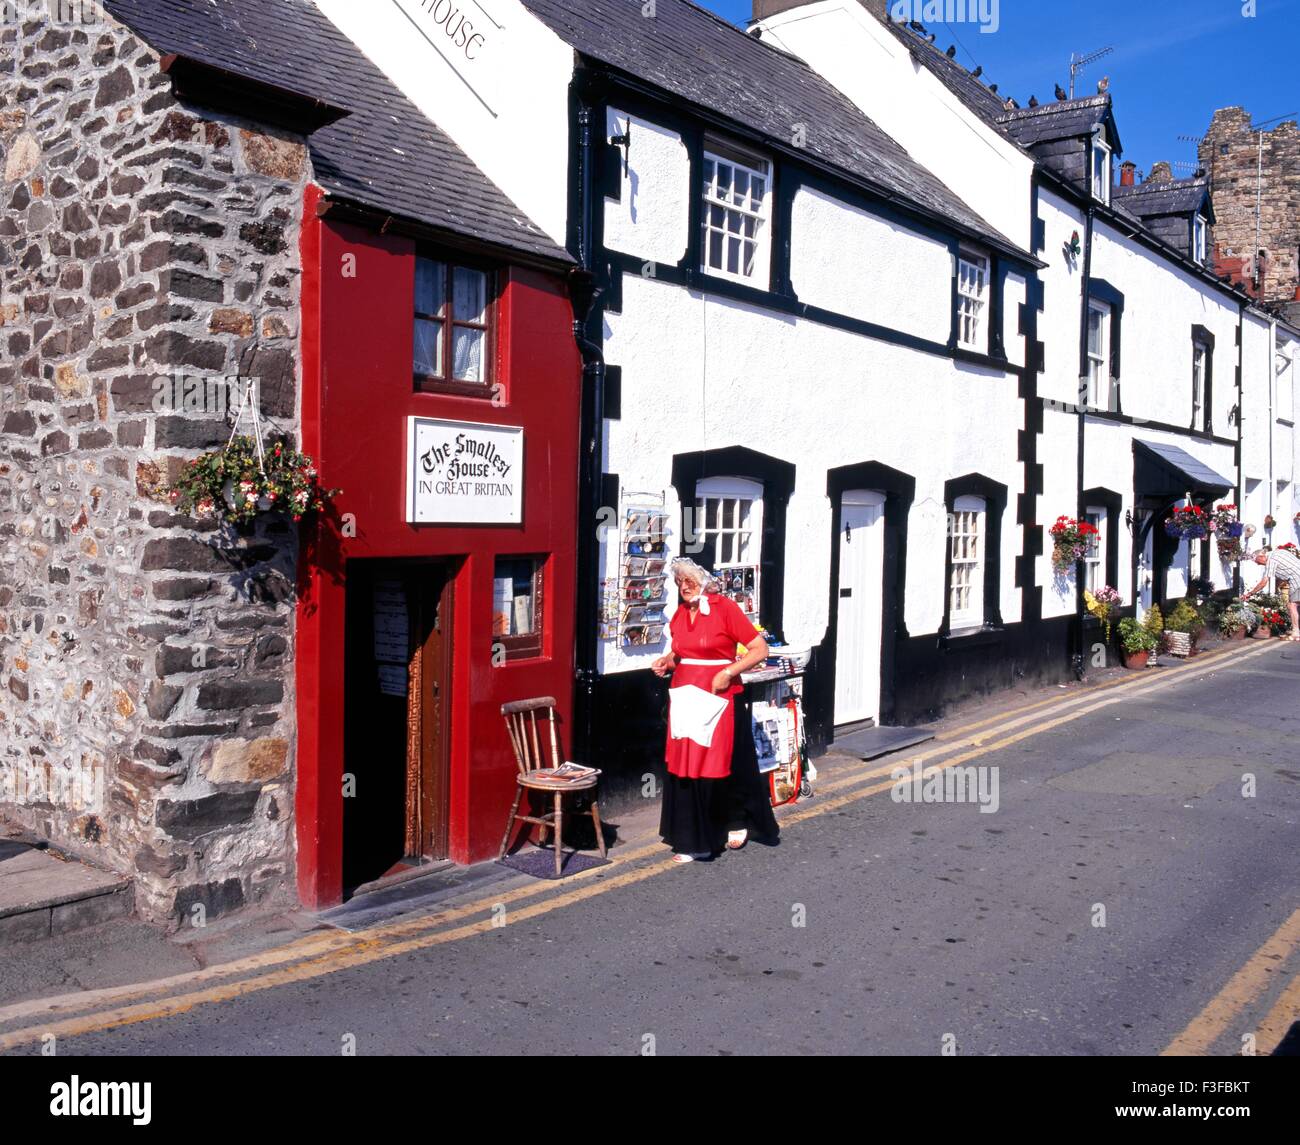 Das kleinste Haus in Großbritannien mit einer walisischen Dame in Tracht im Vordergrund, Conwy, Gwynedd, Wales, UK. Stockfoto